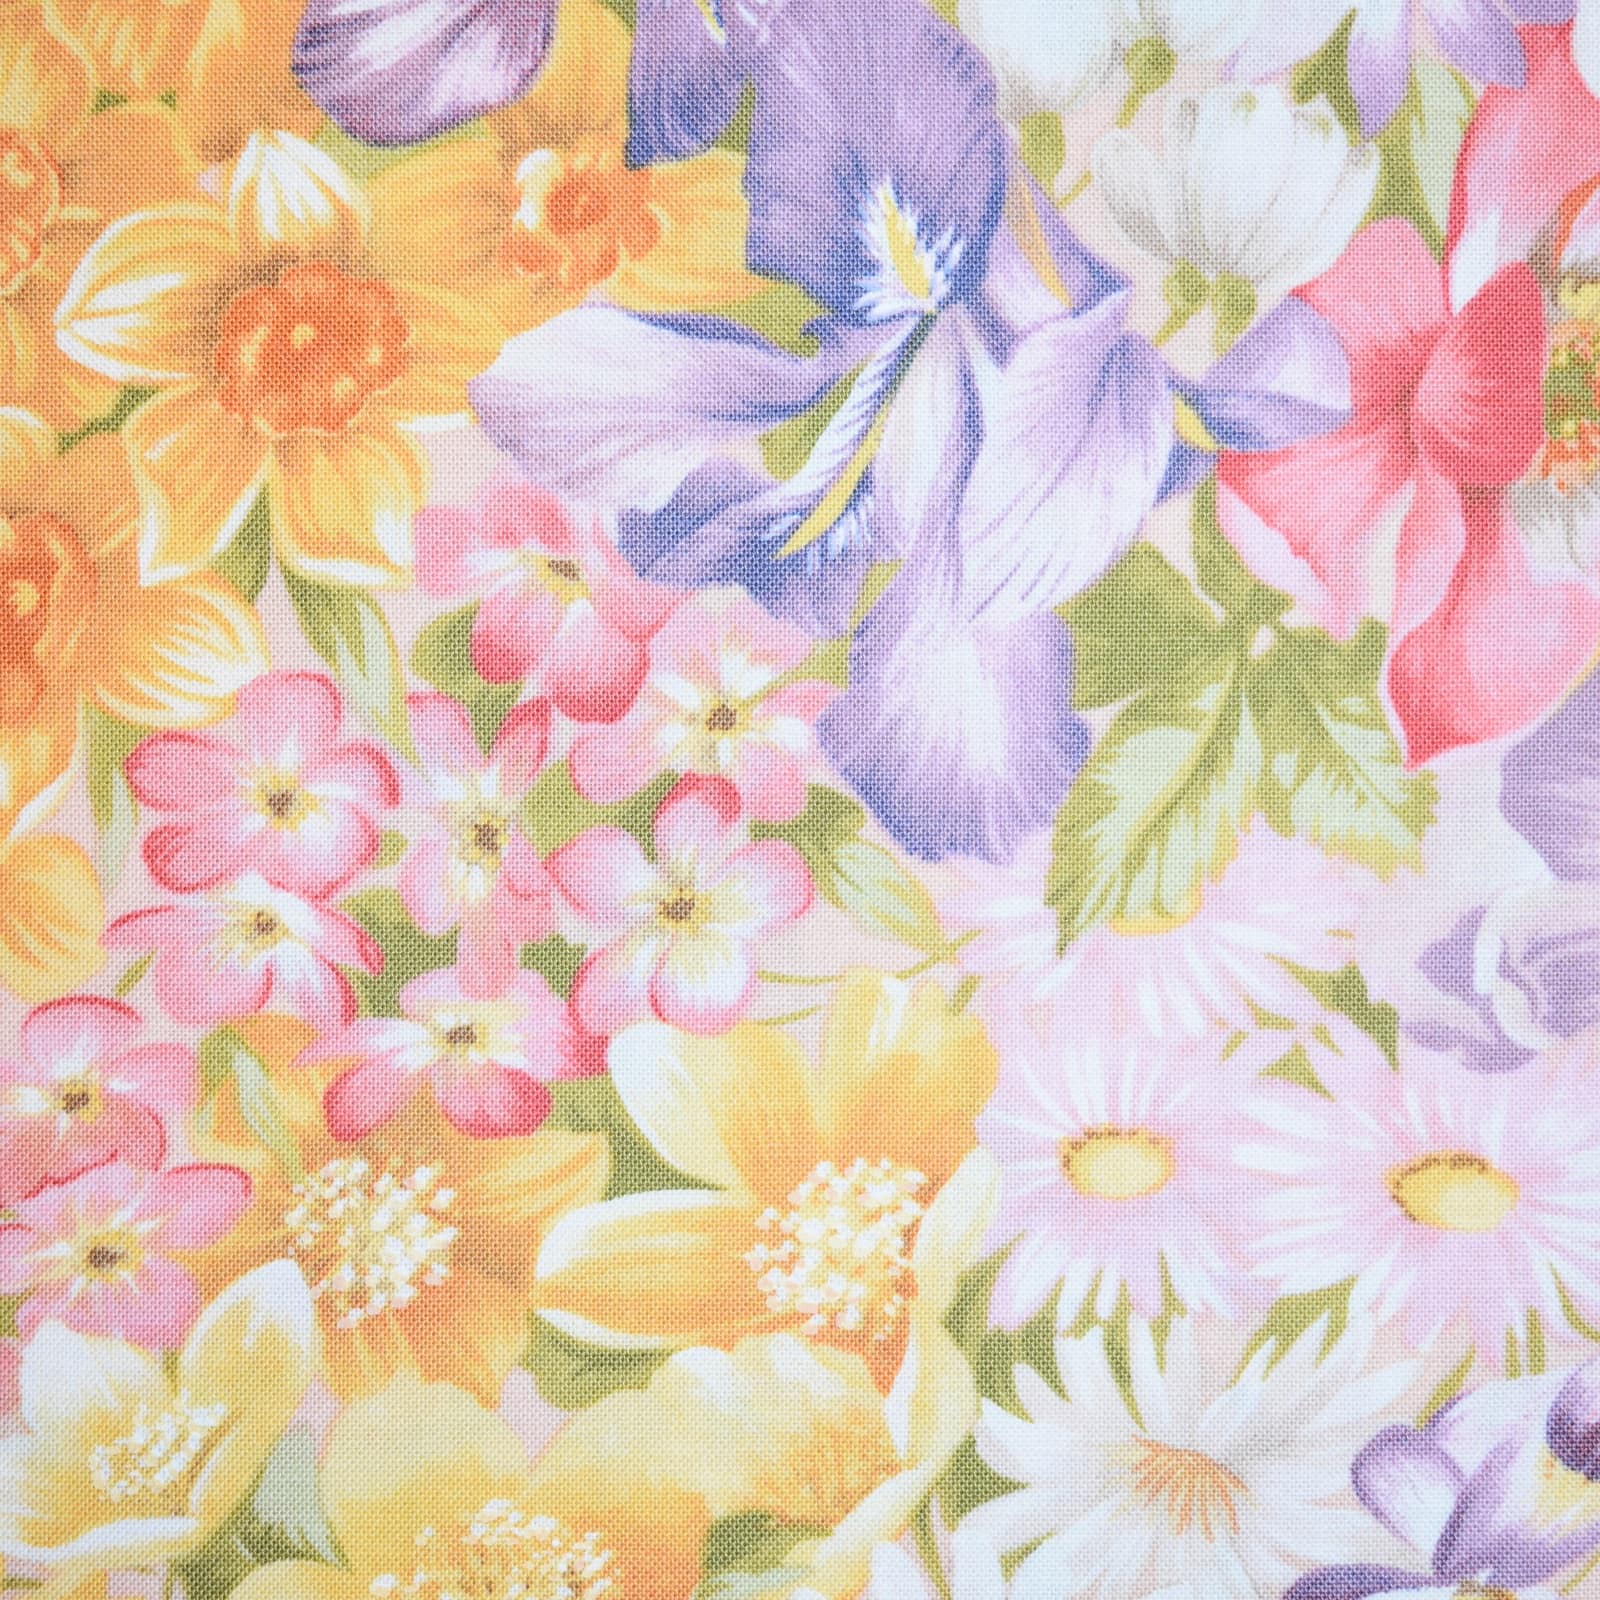 Vintage Floral Cotton Fabric